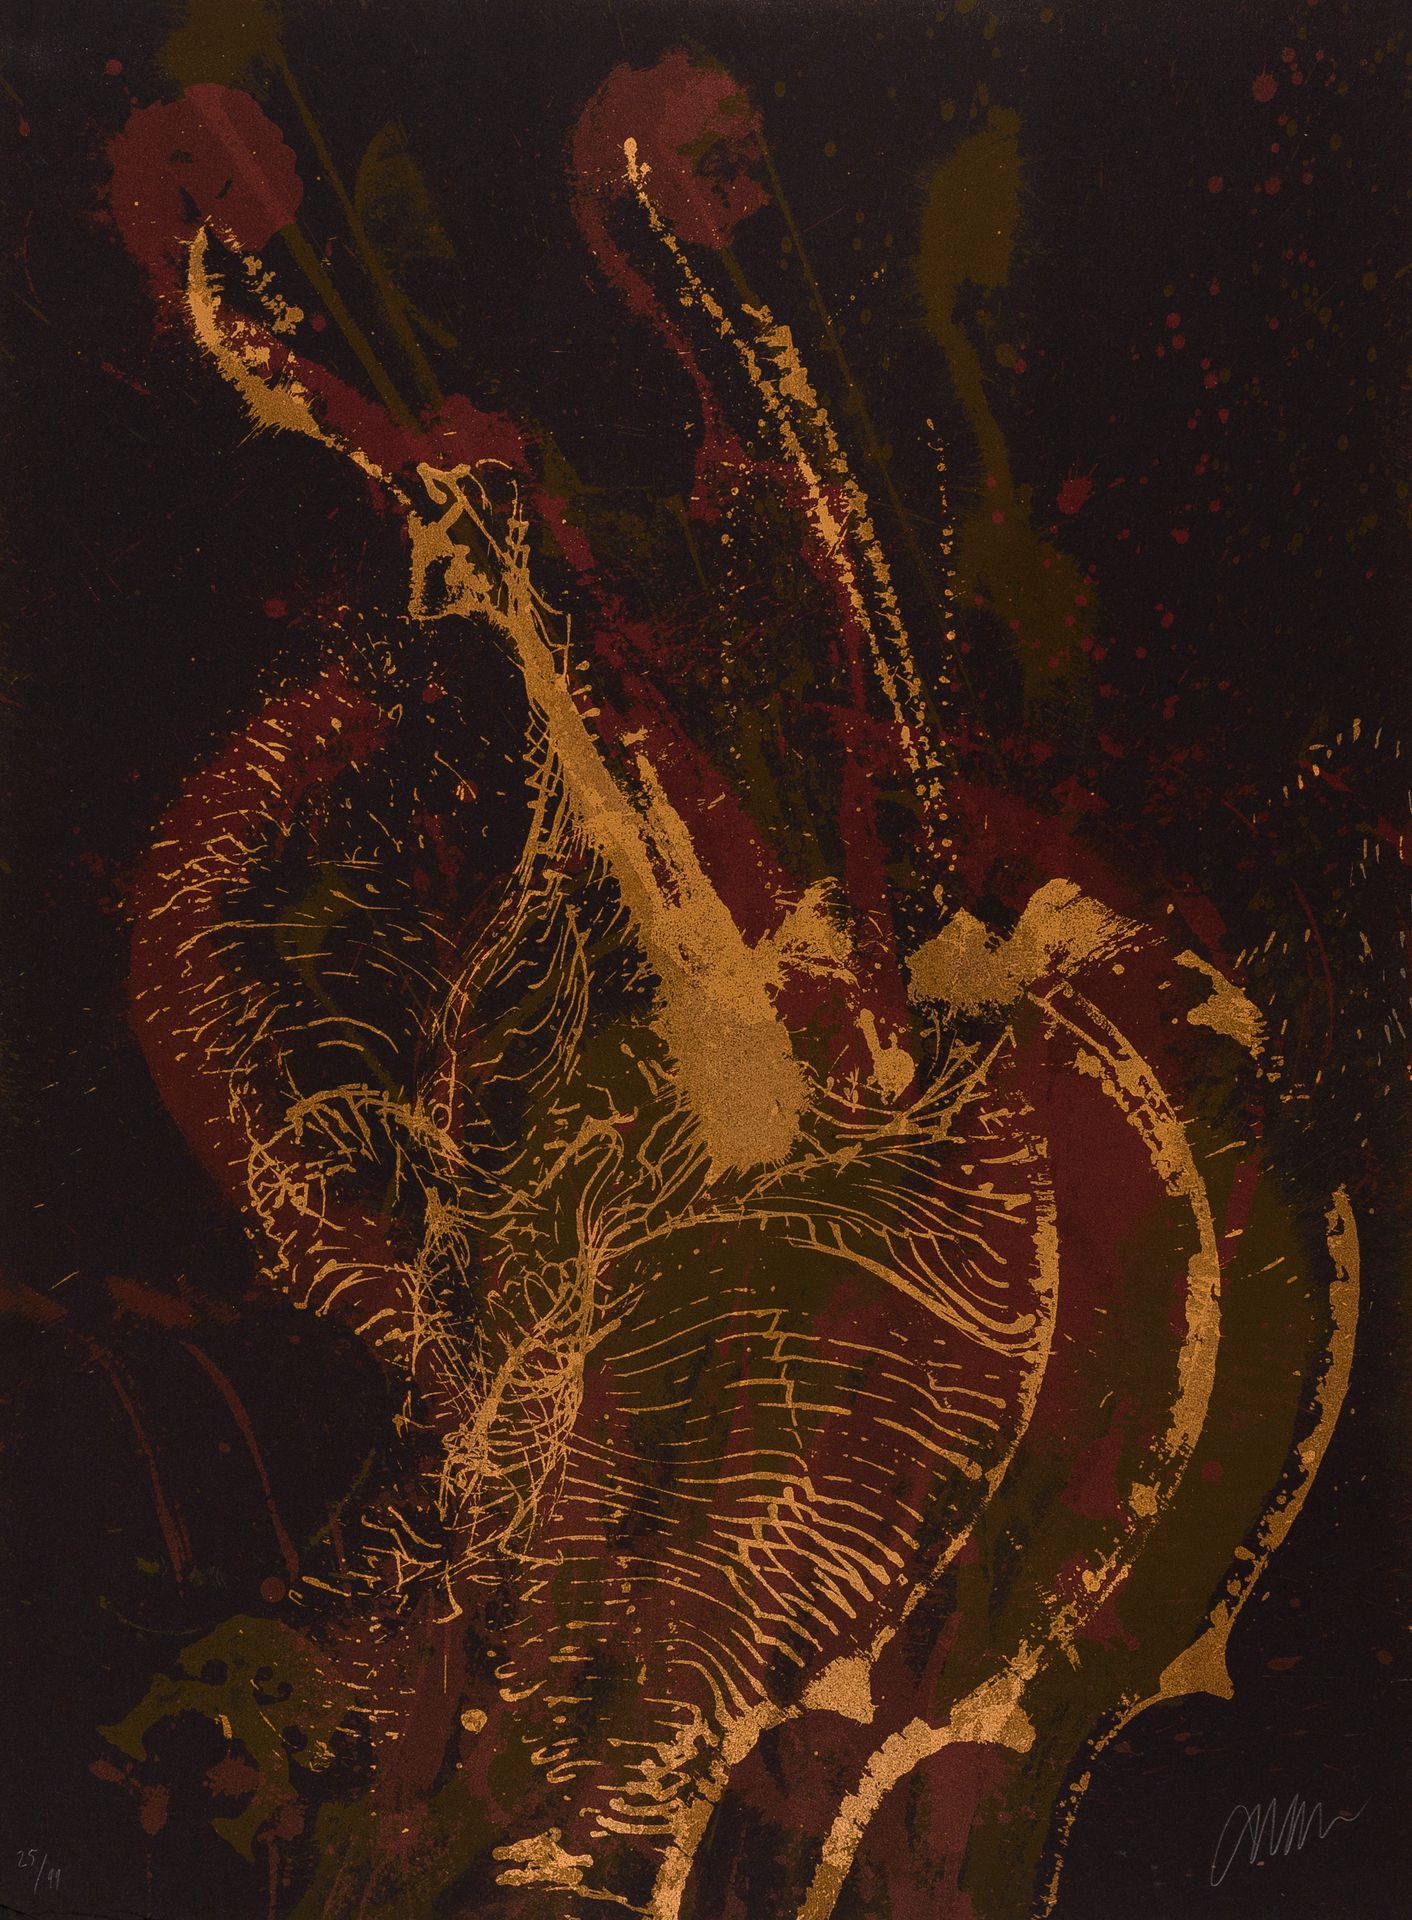 Null 
阿尔曼(1928-2005)

大提琴版画，1990年

黑纸平版画，左下角有小的破损和折痕

有签名和编号的25/99

76 x 56 cm